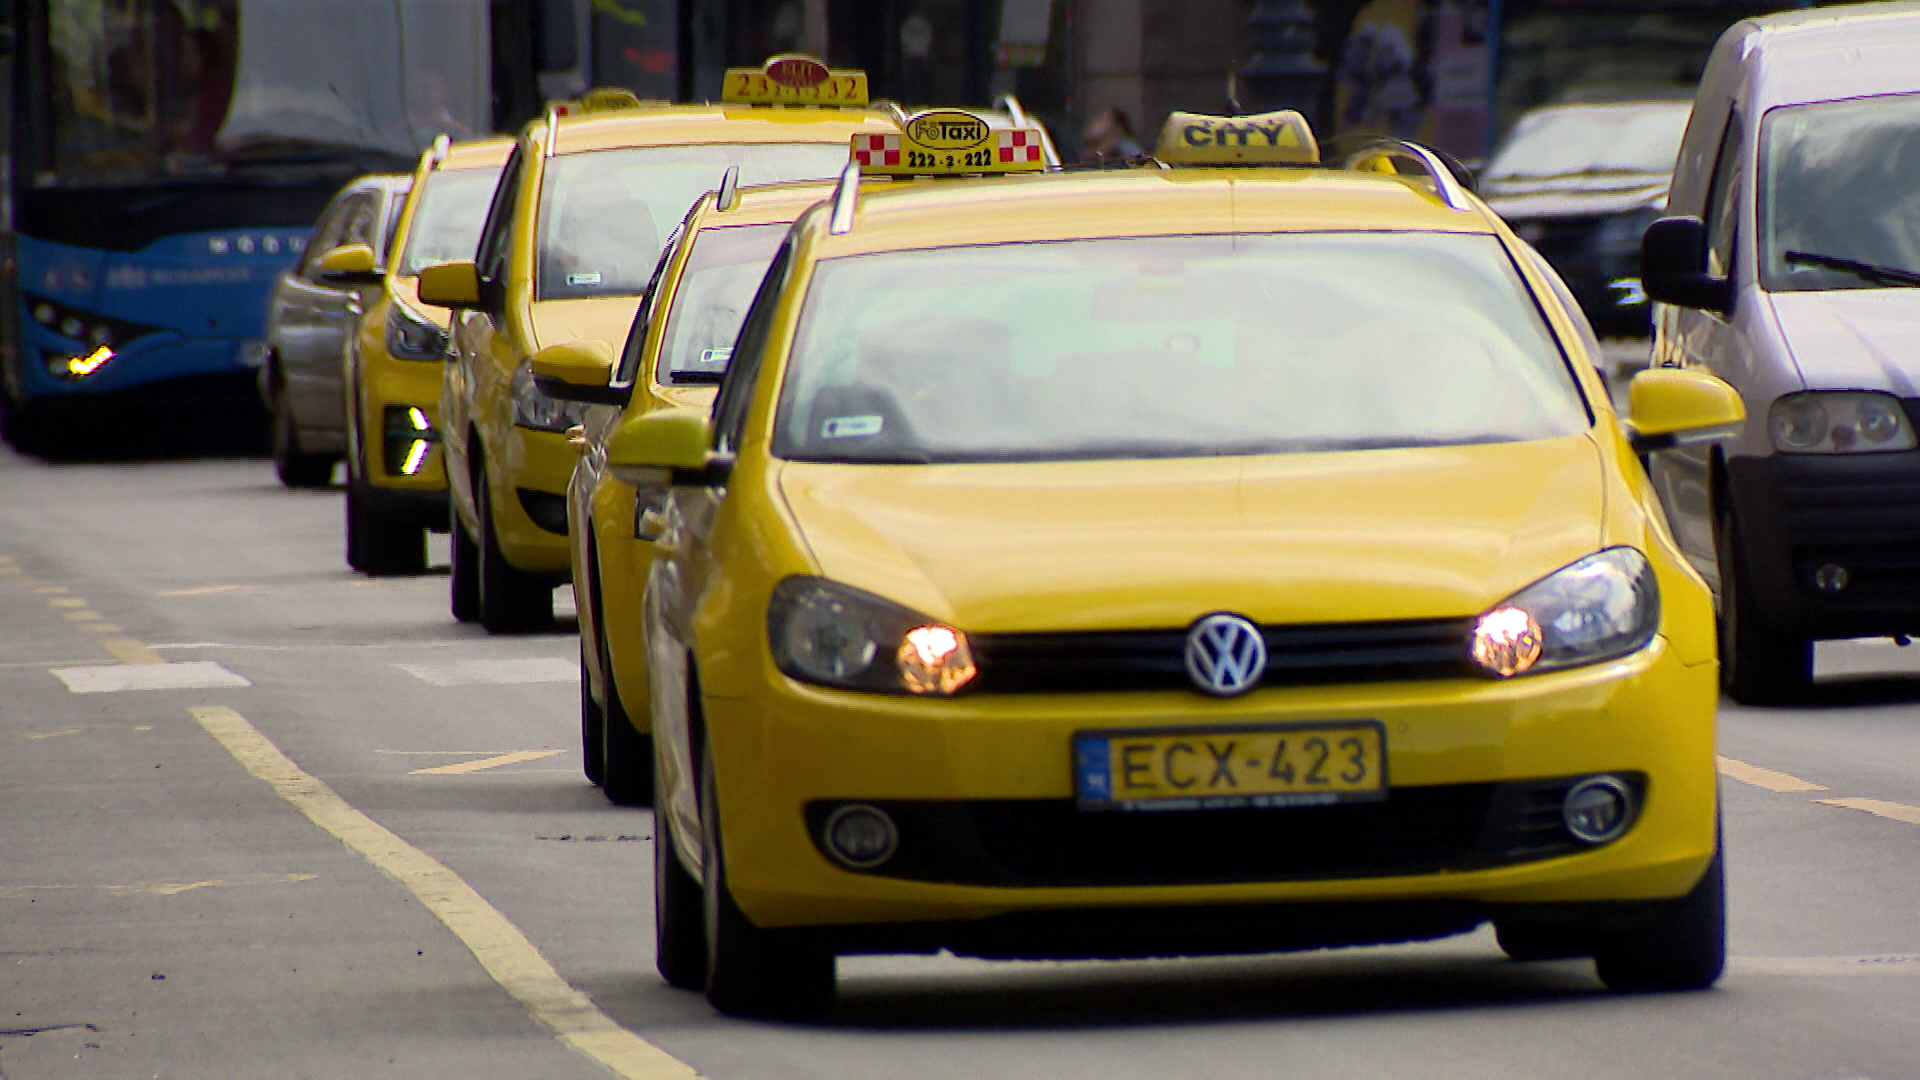 Emelkednek a taxis tarifák Budapesten